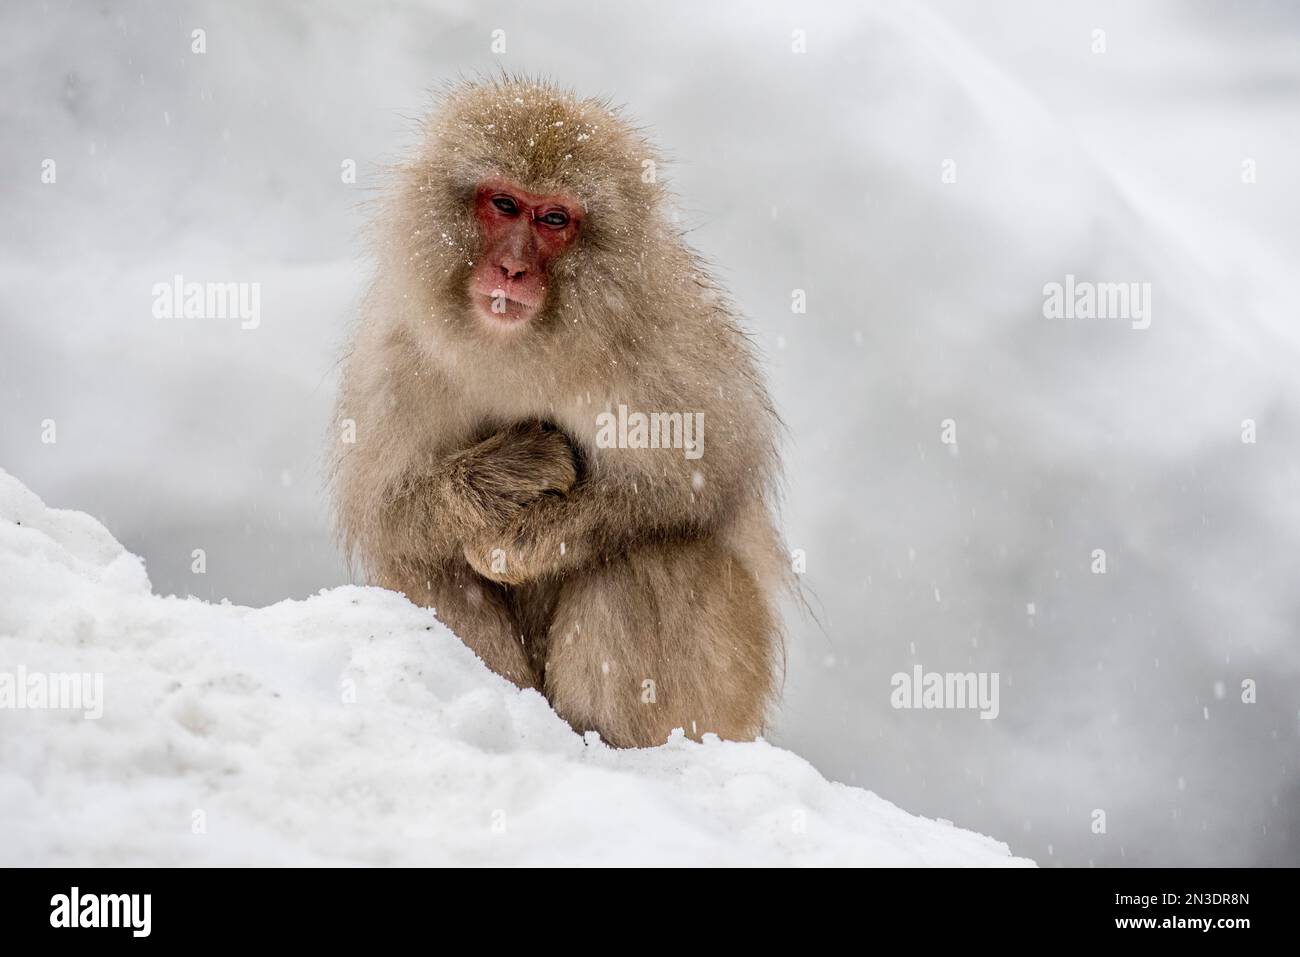 Ritratto di una scimmia Macaque giapponese (Macaca fuscata), spesso indicata come scimmia della neve, seduta su una sponda di neve guardando la neve che cade nel ... Foto Stock